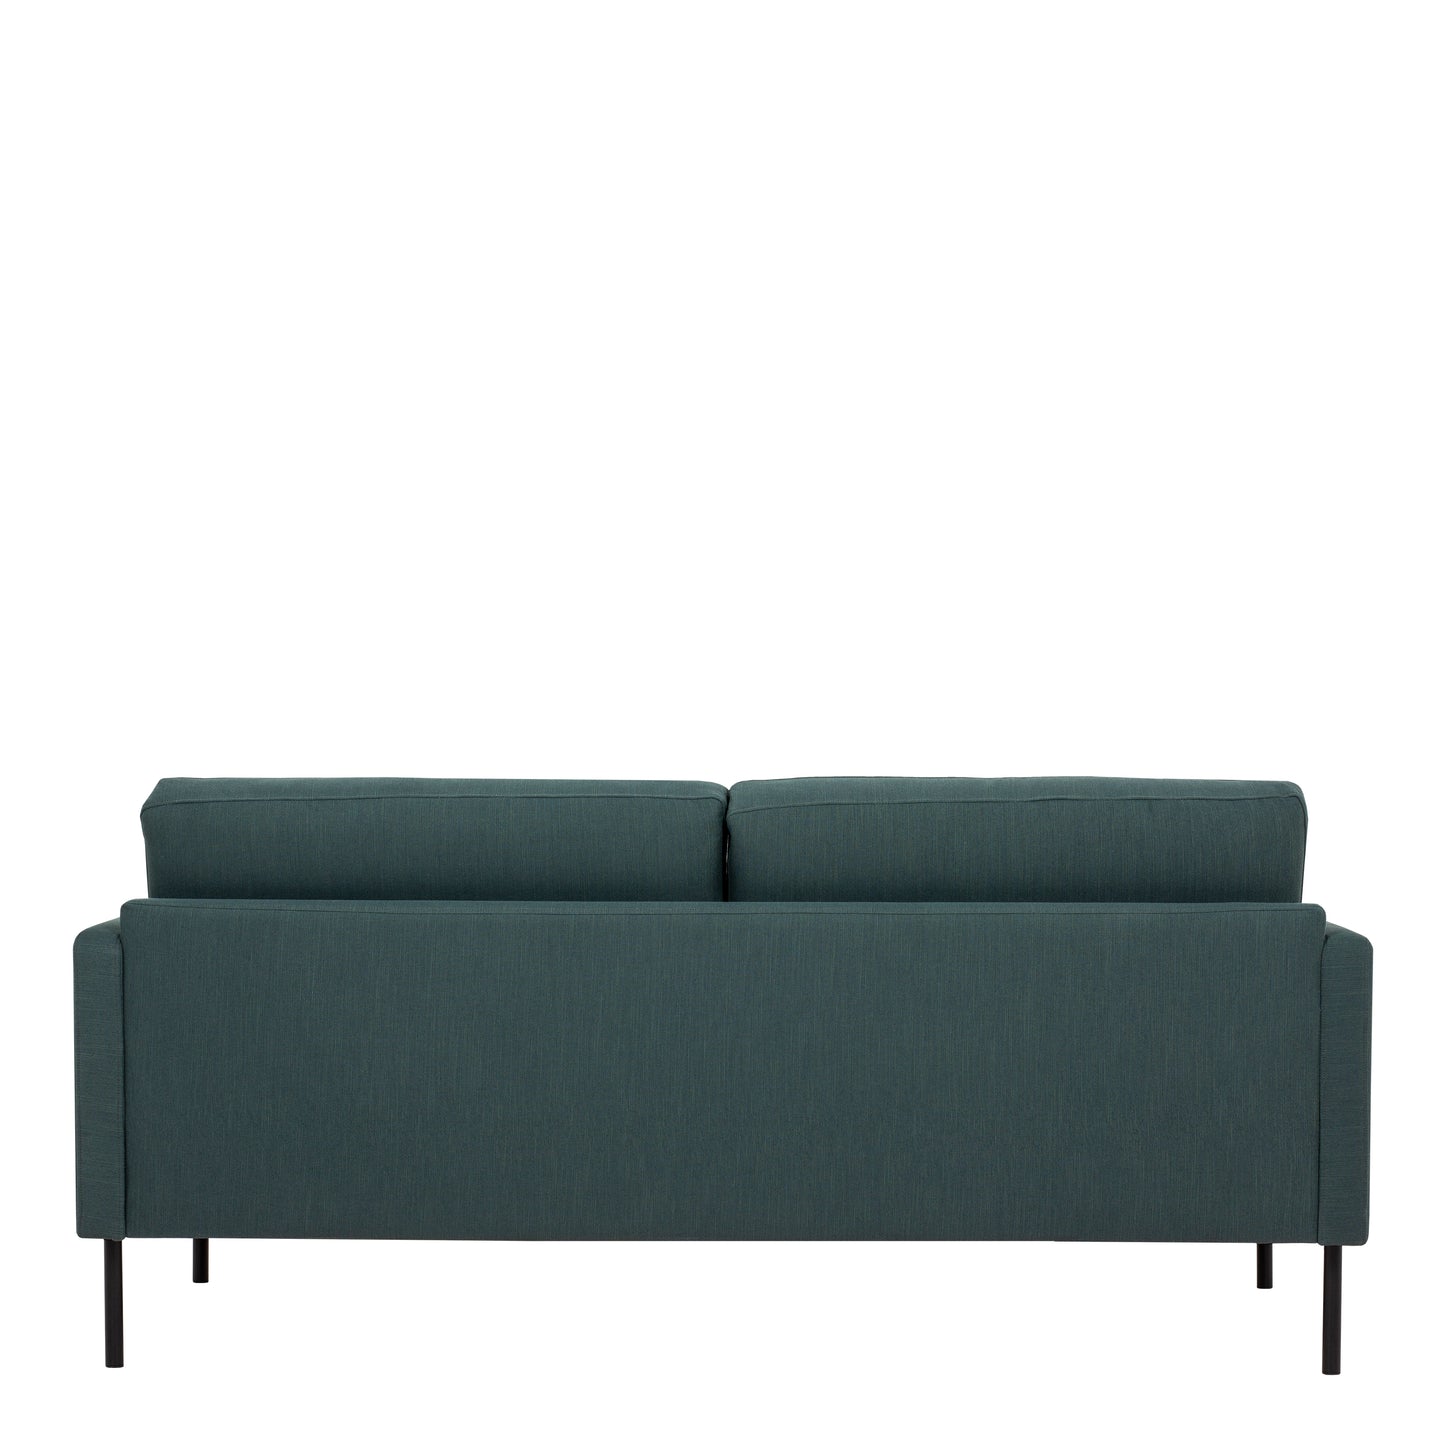 Larvik  2.5 Seater Sofa - Dark Green, Black Legs